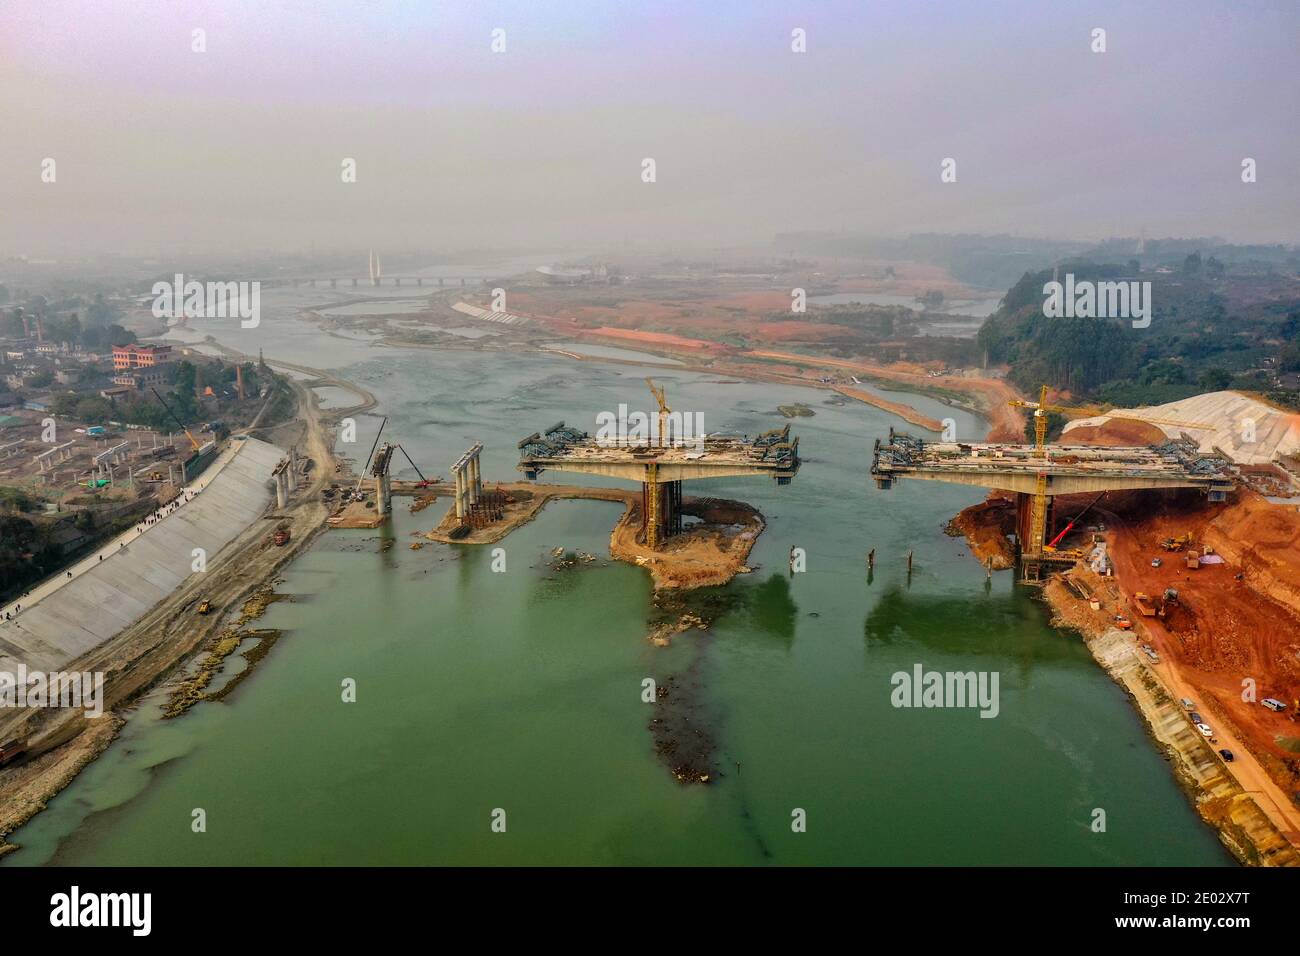 Una vista aerea del Ponte Nanhe, parte della strada che collega Meishan e Chengdu, in costruzione nel quartiere di Pengshan, la città di Meishan, a sud-ovest Foto Stock